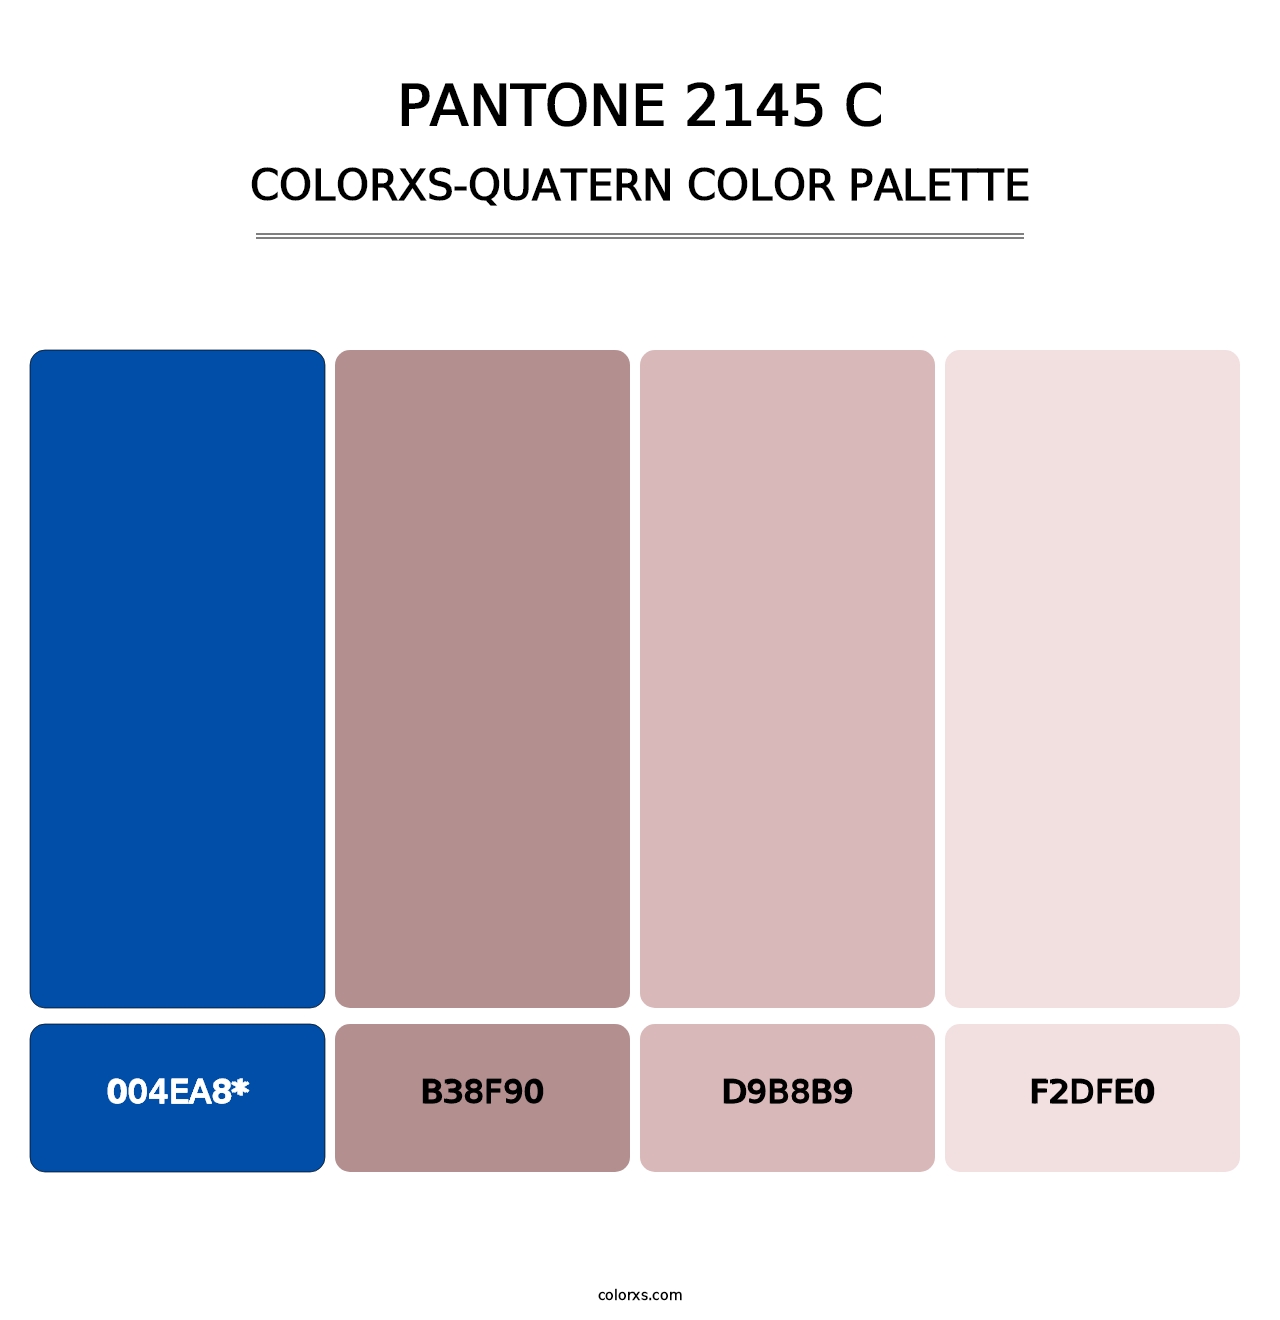 PANTONE 2145 C - Colorxs Quatern Palette